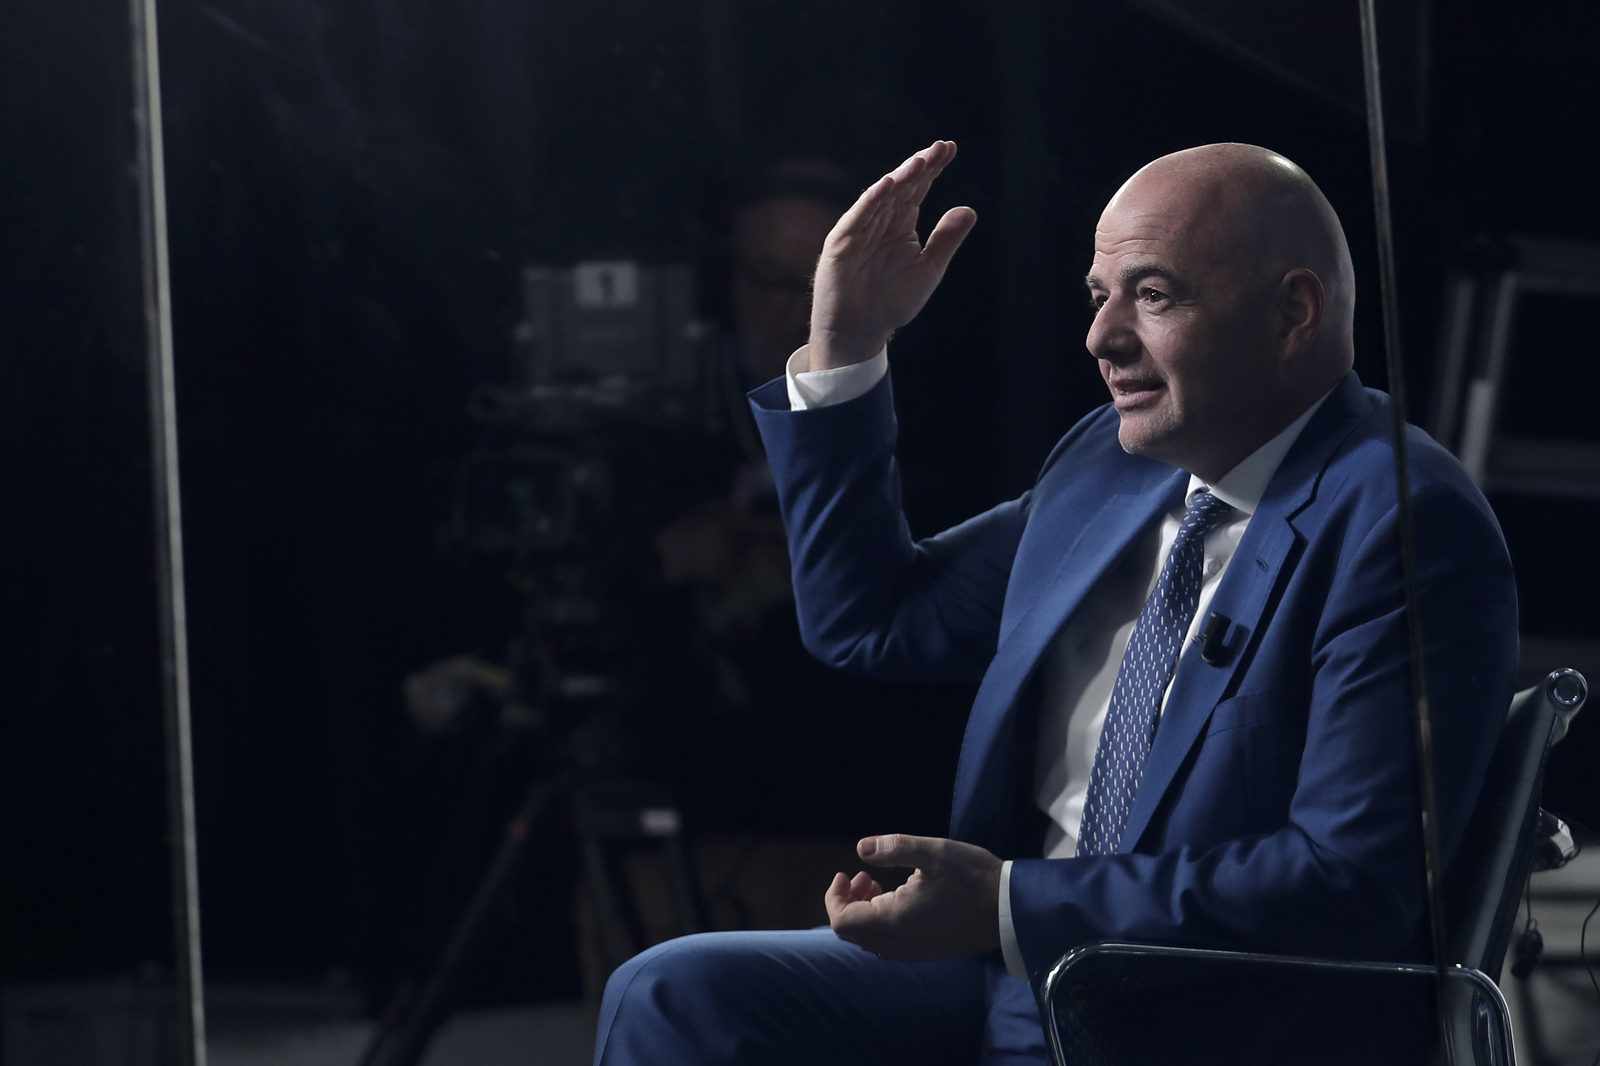 El presidente de la FIFA, Gianni Infantino, es visto en un estudio de televisión durante una entrevista en Davos, Suiza. (AP)